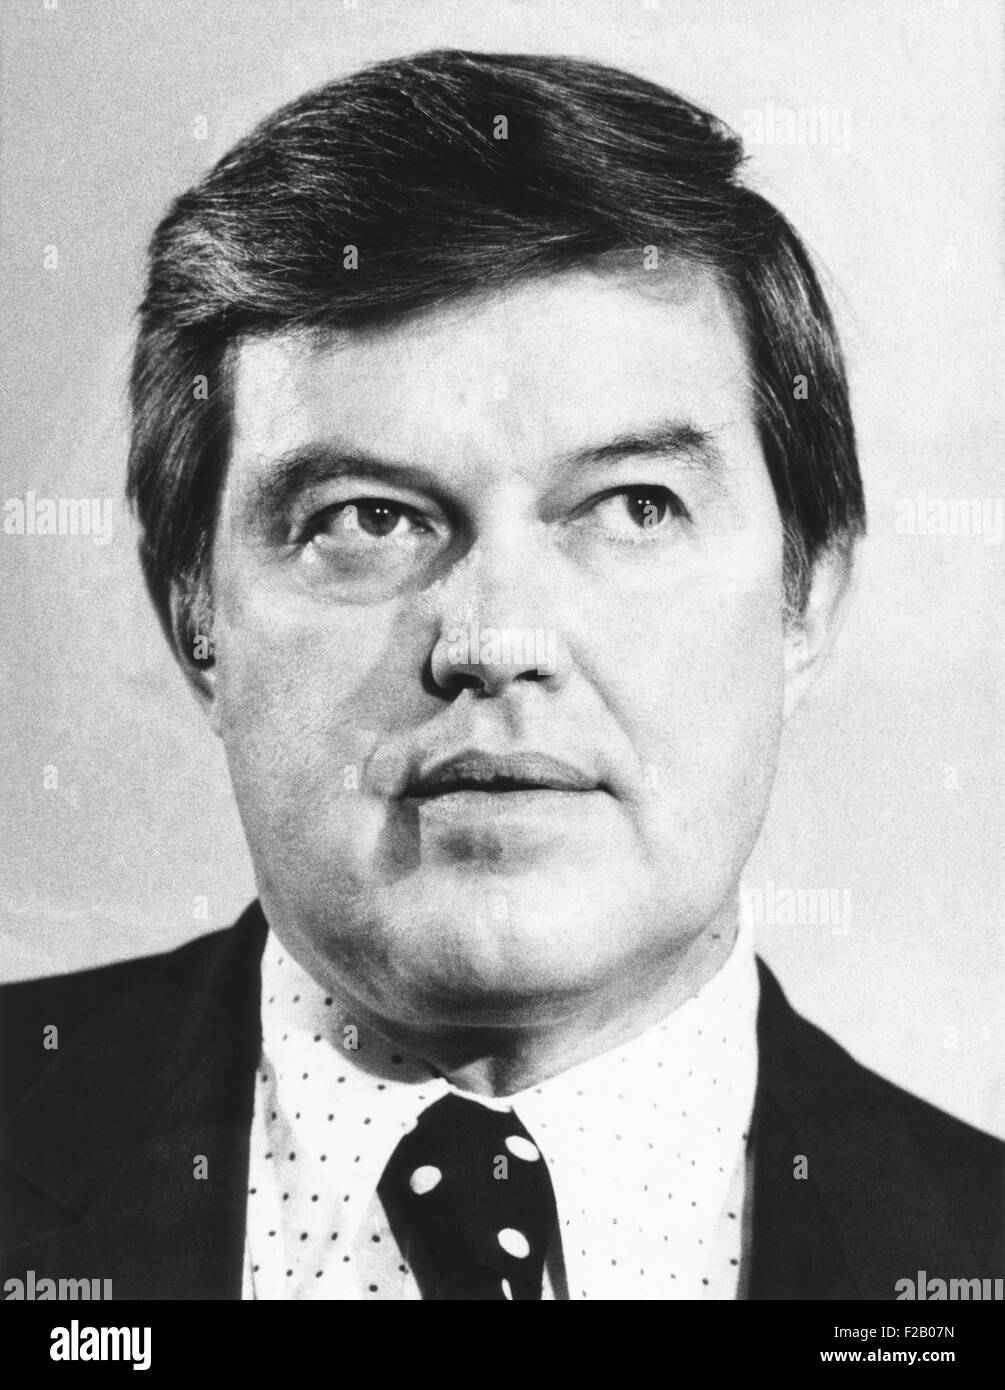 El Senador Frank Church, demócrata de Idaho, 28 ene, 1975. Fue Presidente del Comité de Inteligencia del Senado. Foto de stock